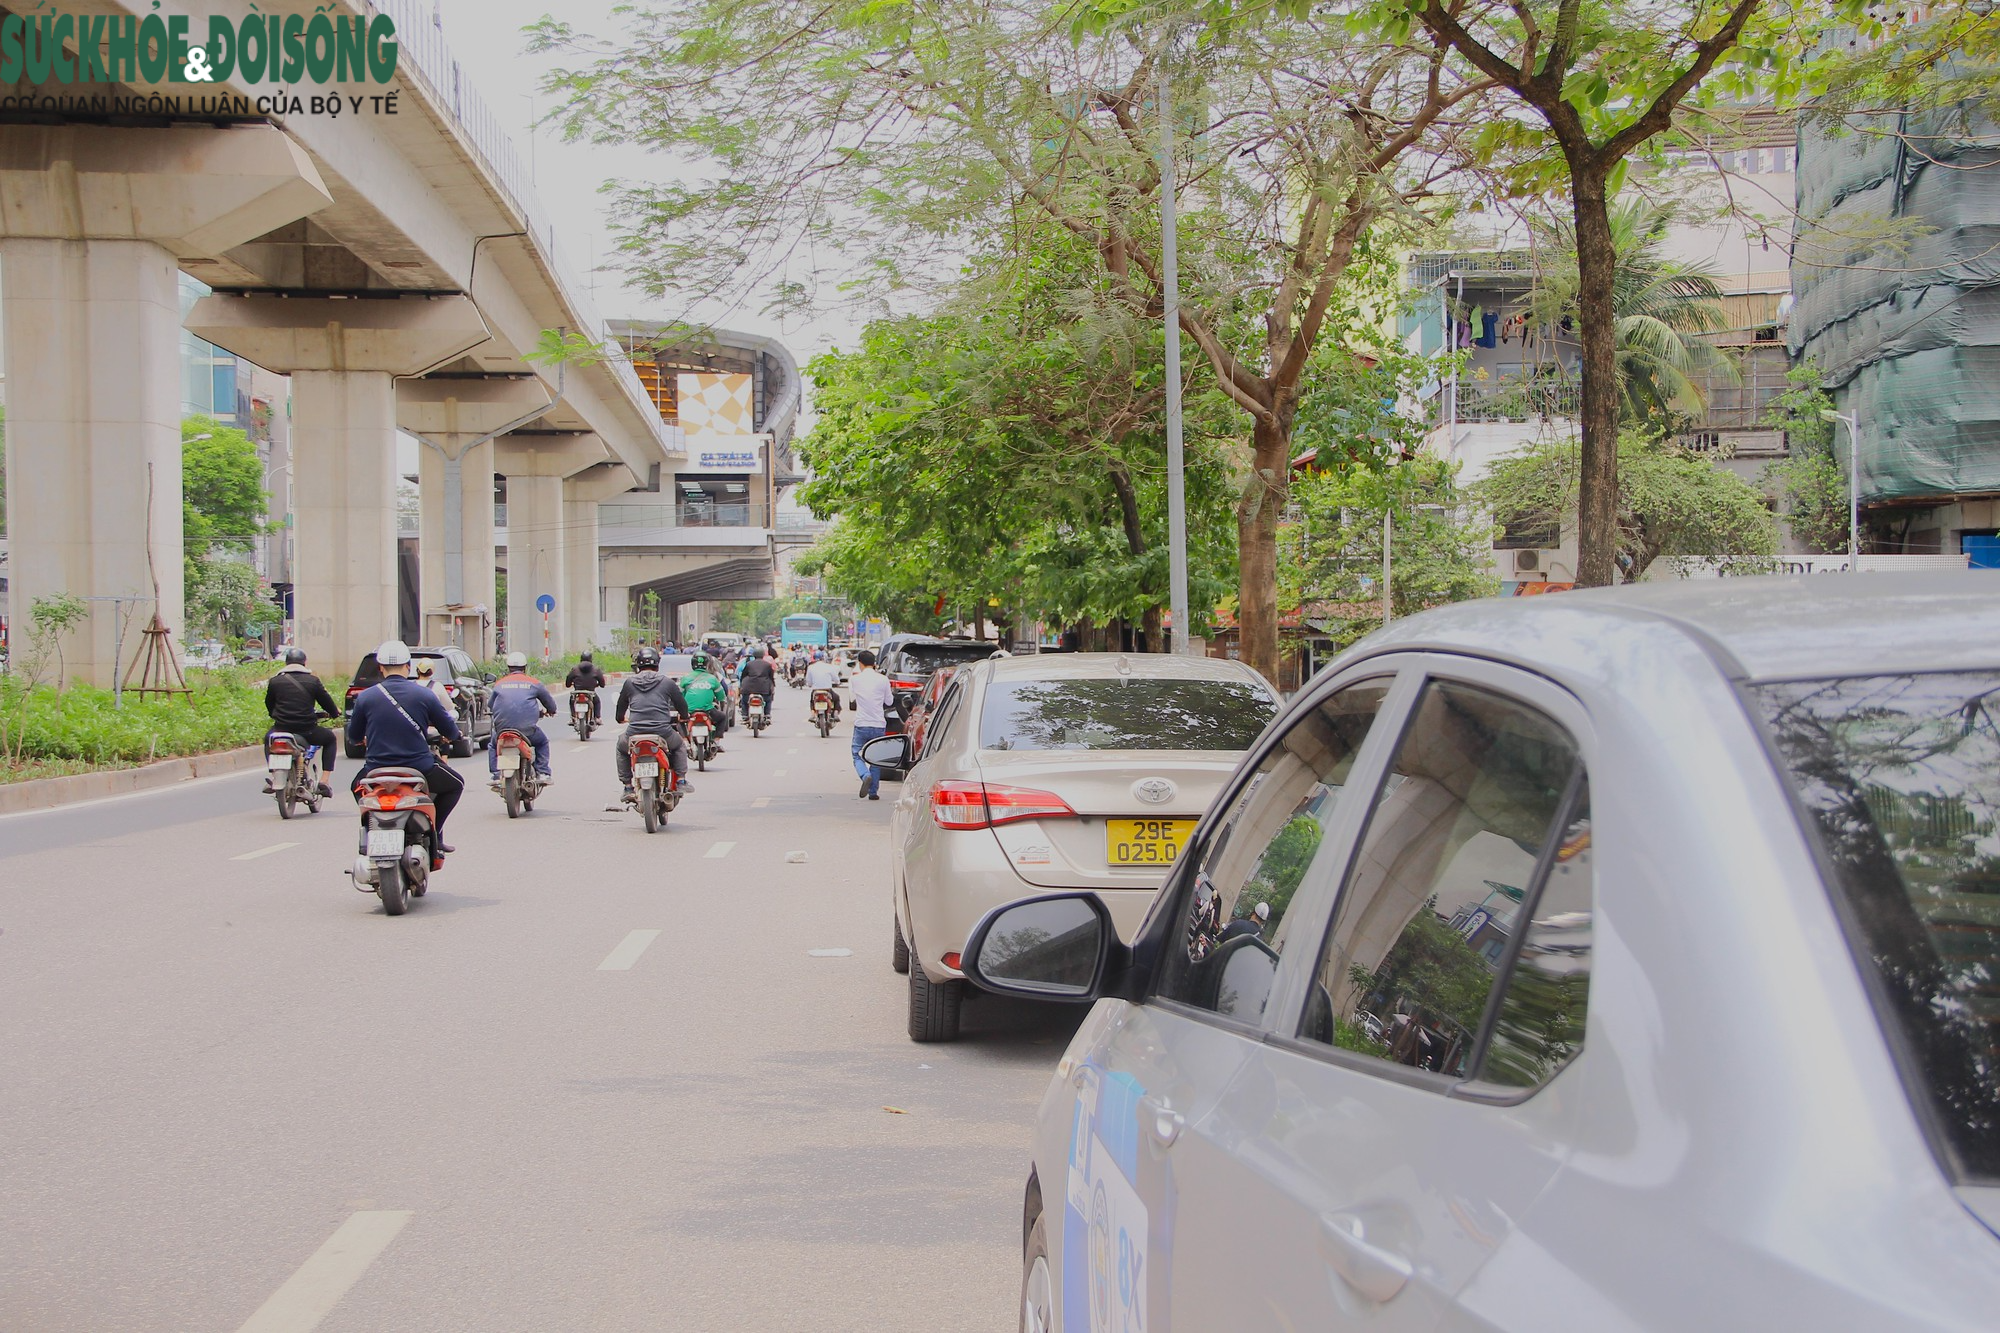 Hà Nội: Cận cảnh 3 địa điểm dự kiến trở thành phố đi bộ mới - Ảnh 2.